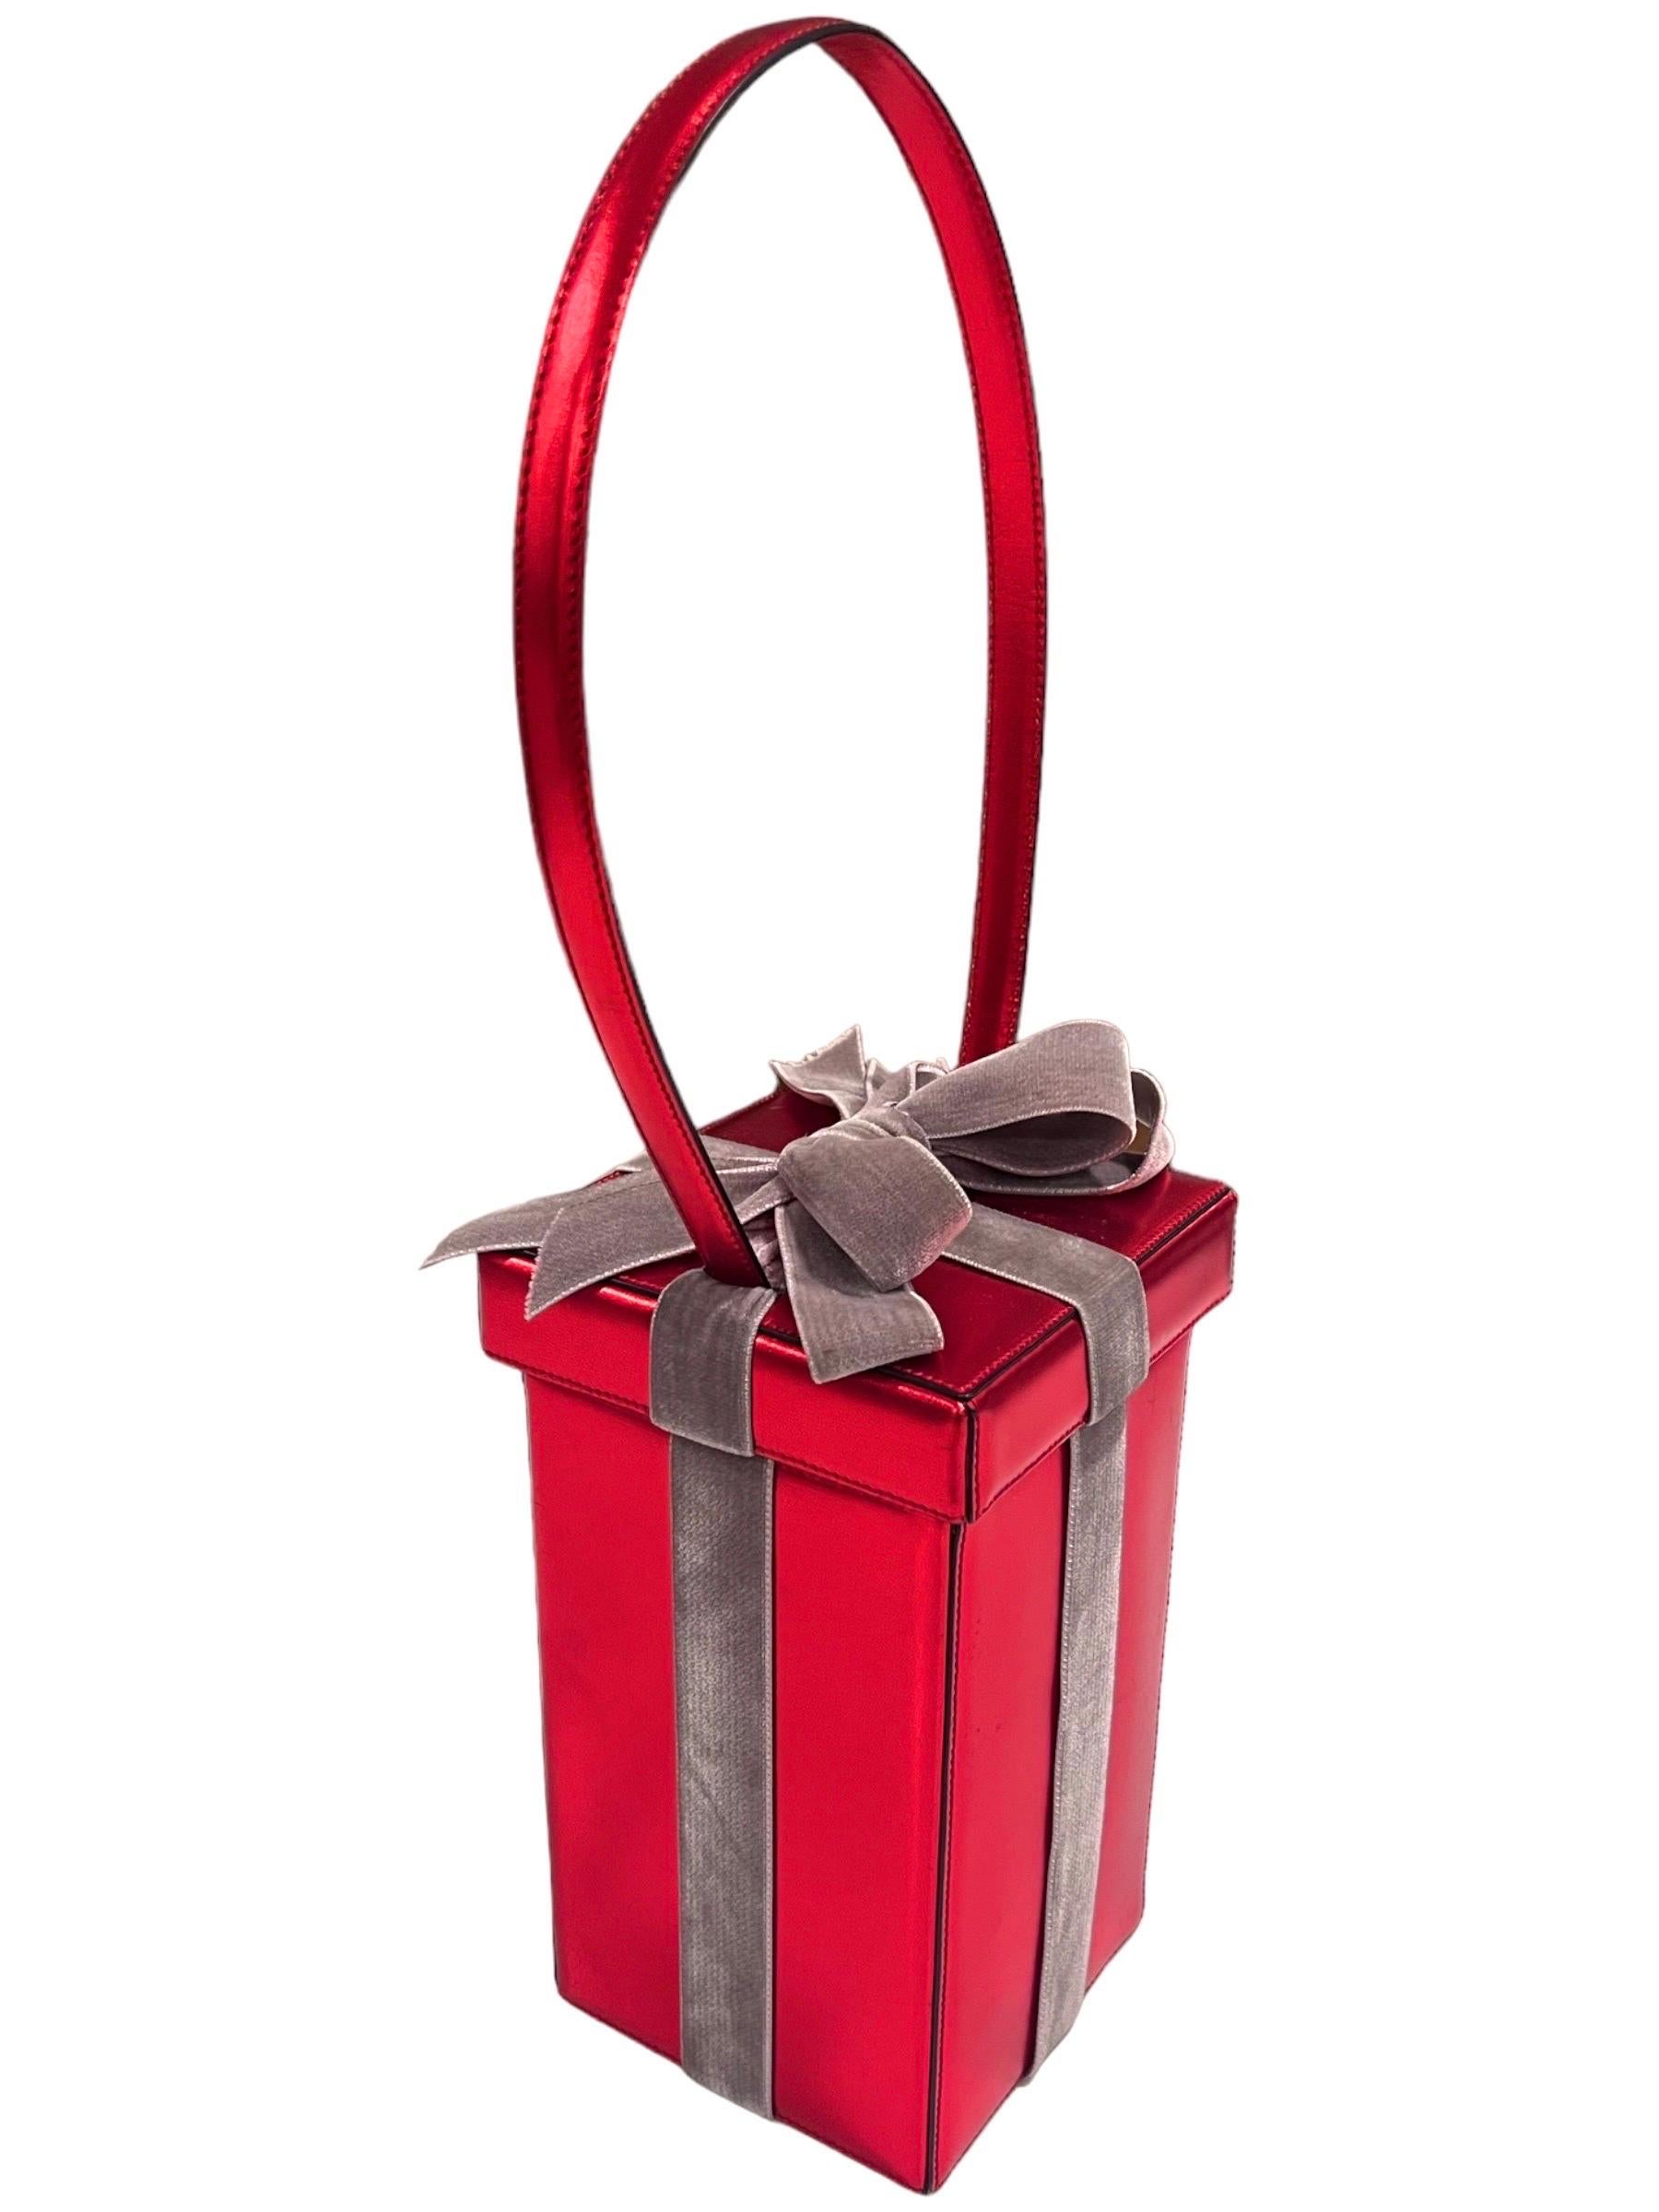 Sac à bandoulière Moschino vintage et fantaisiste, rouge, en forme de boîte cadeau.
Cuir rouge métallisé avec un nœud en velours.
Pour ouvrir le sac, la partie supérieure se soulève mais reste attachée au sac par les lanières de cuir.
Étiquette